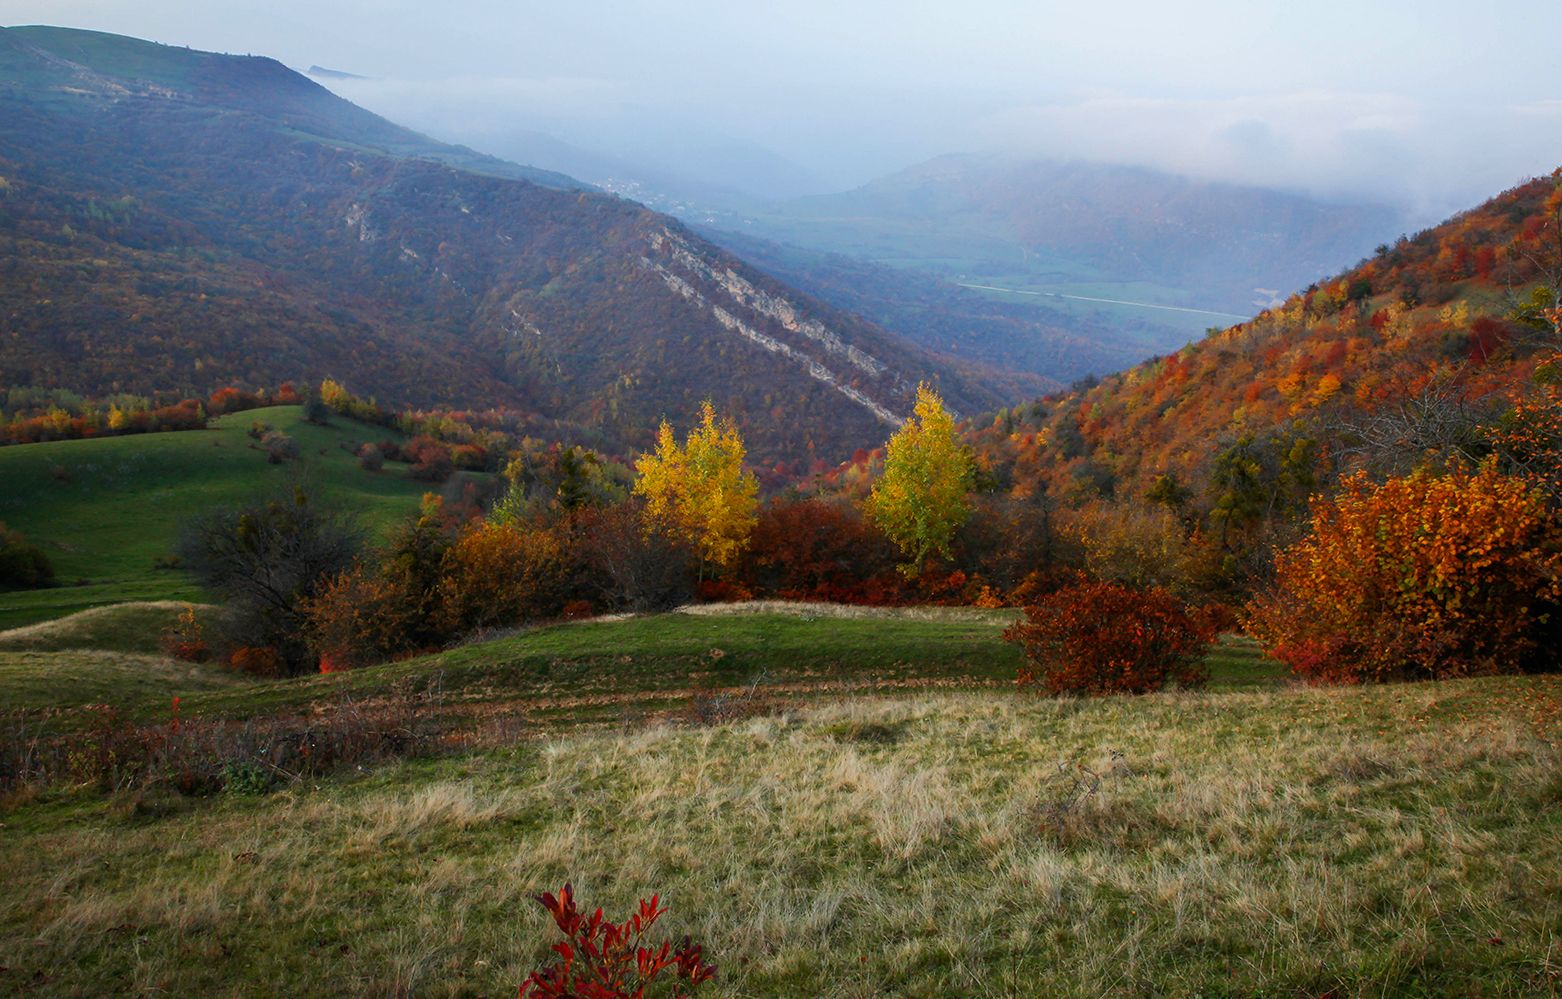 осень,горы,дагестан,пейзаж,, Marat Magov